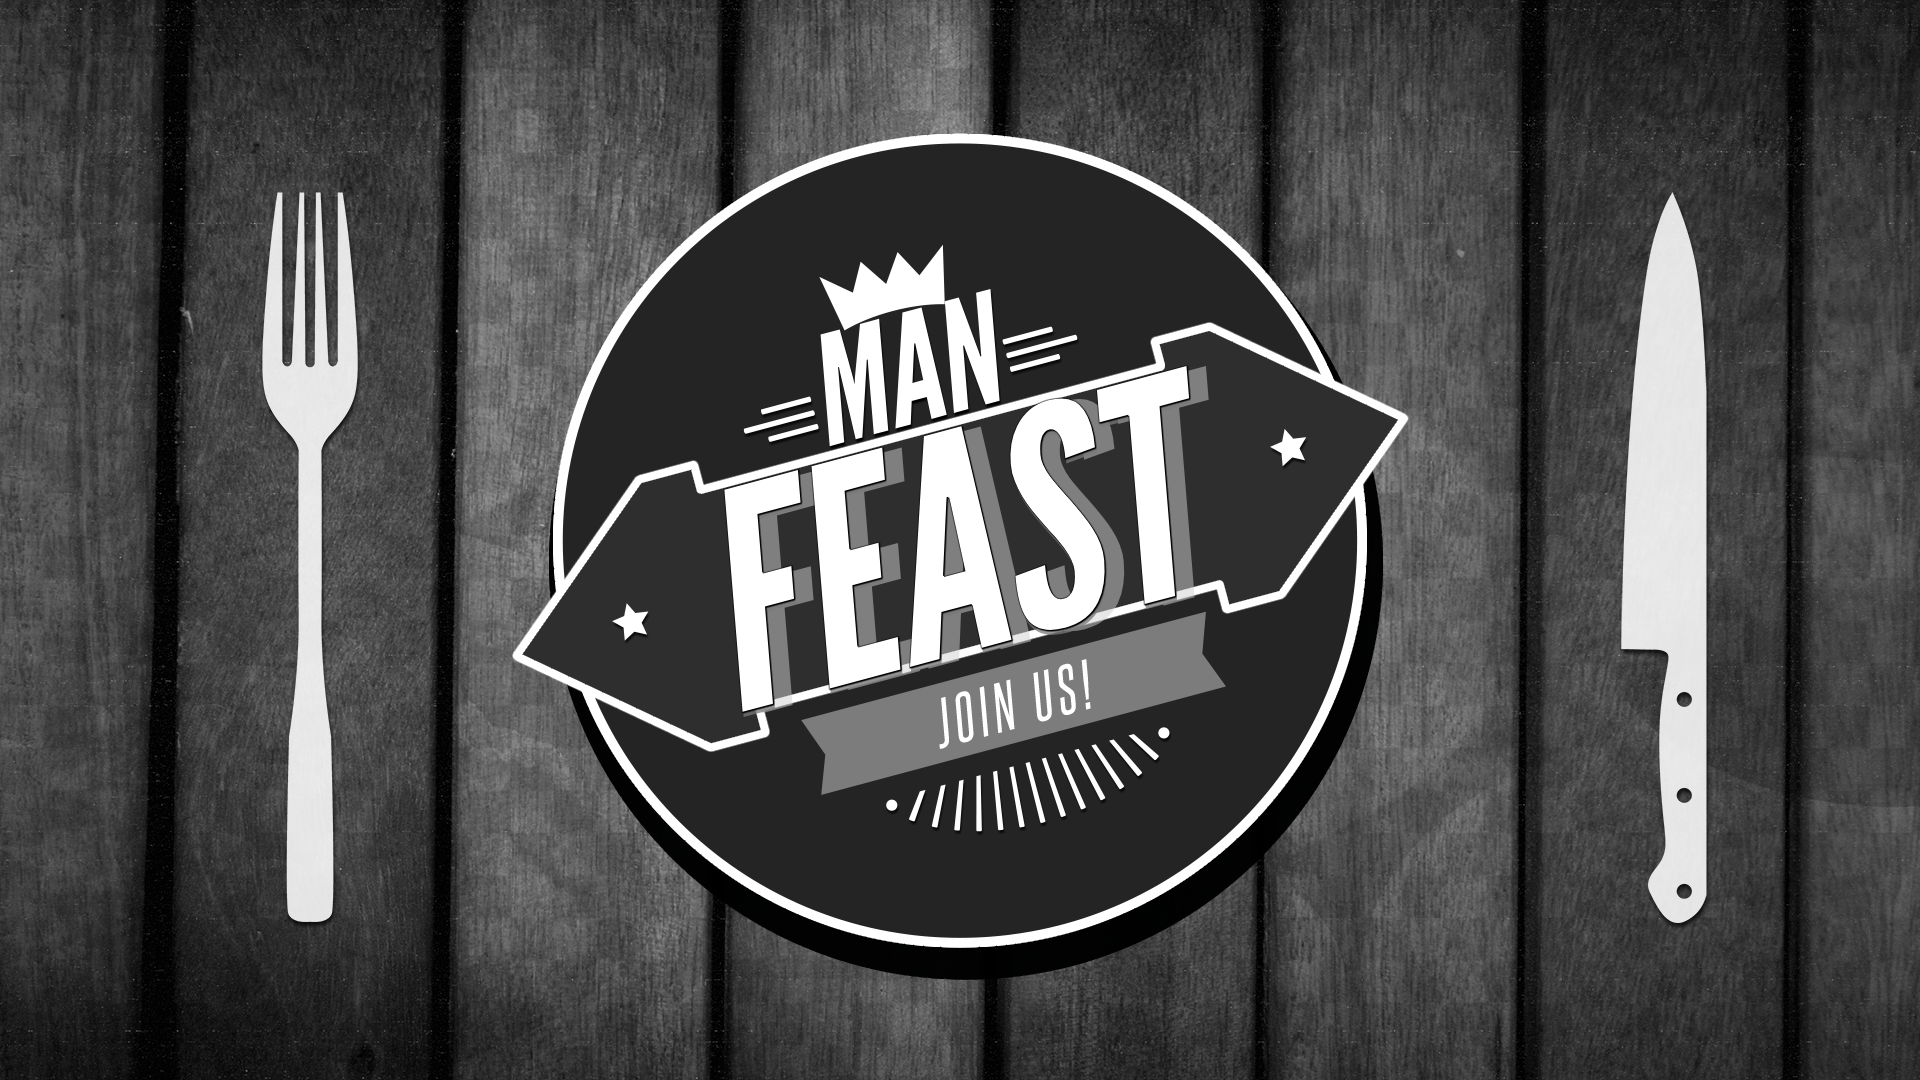 Man Feast @ Venue Building